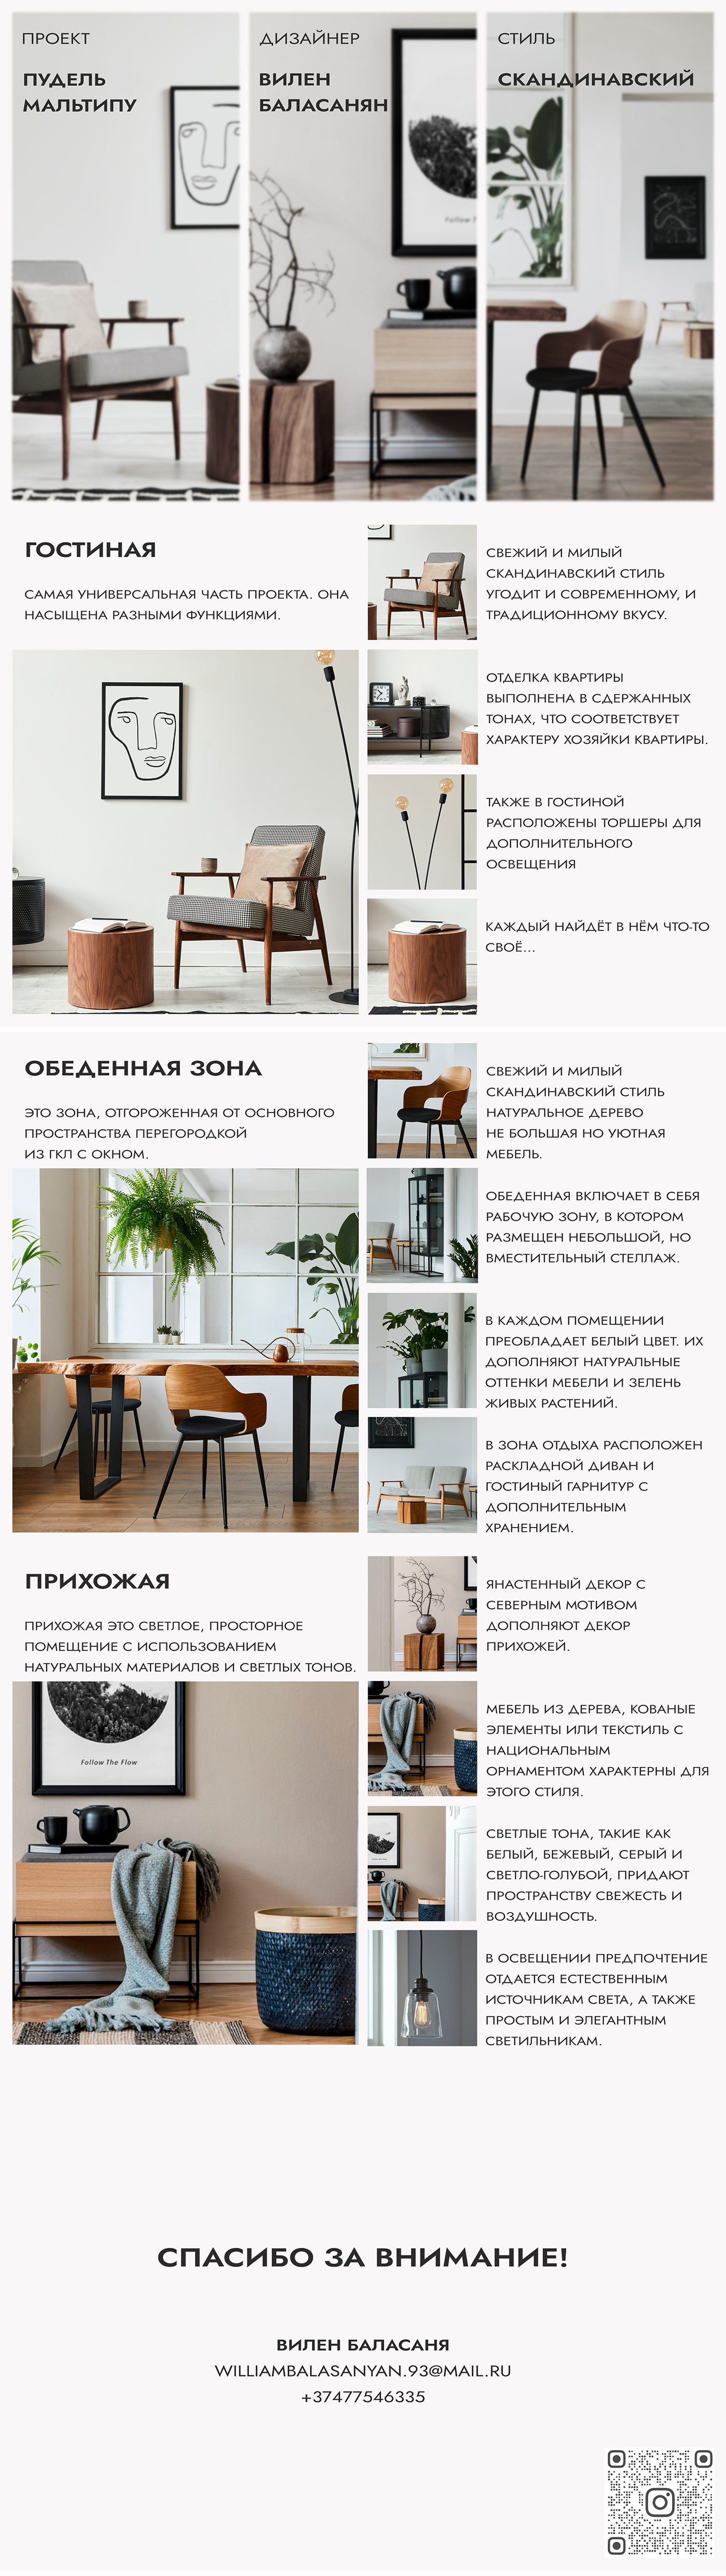 design interior design  visualization 3ds max architecture photoshop collage home skandinavian Interior